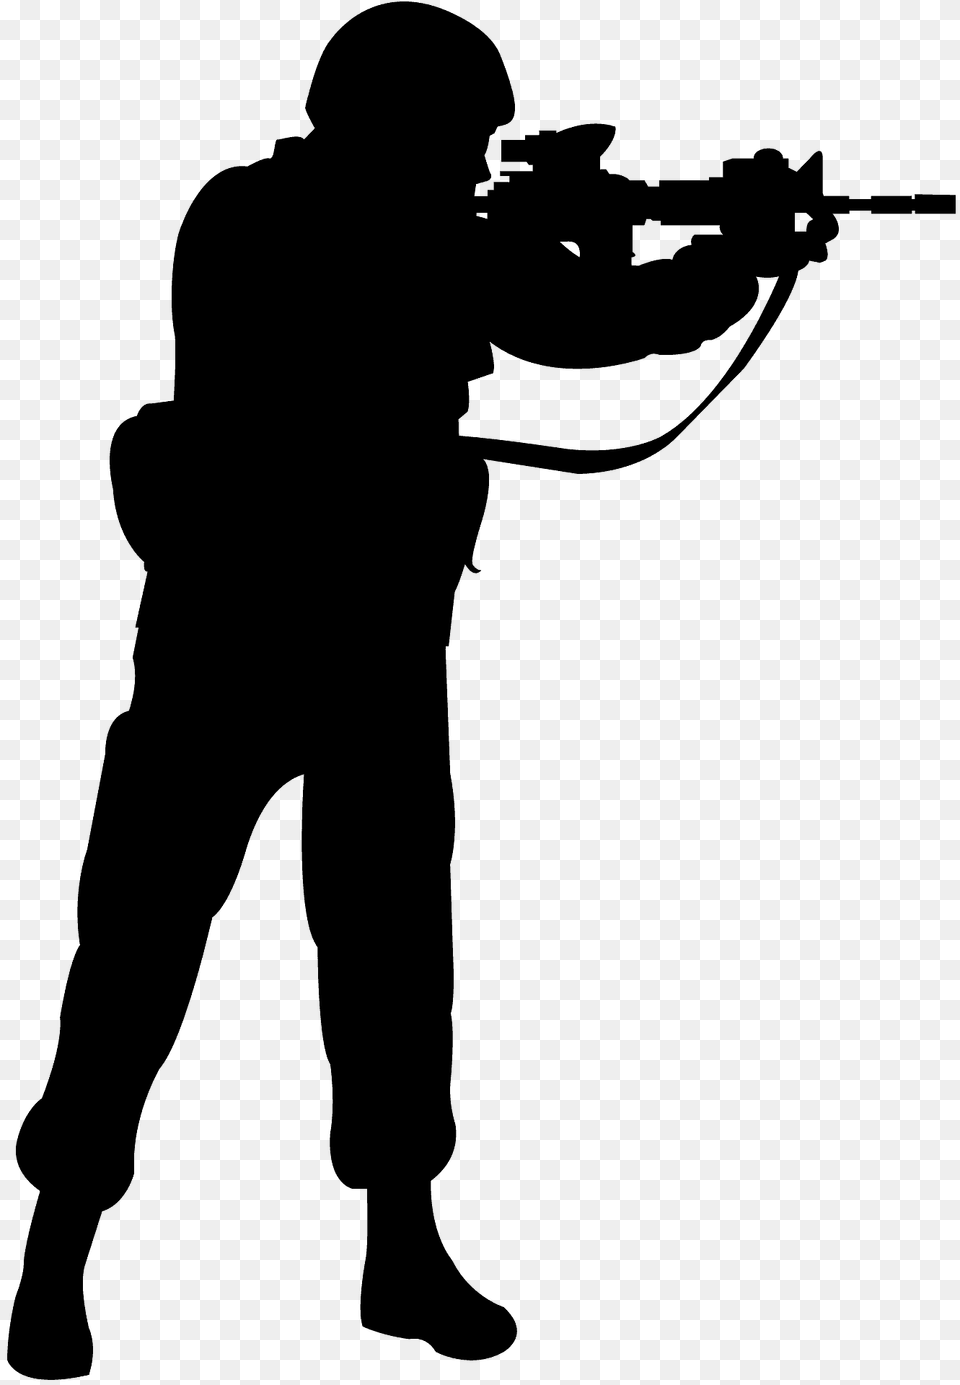 Infantry Silhouette, Weapon, Firearm, Gun, Rifle Png